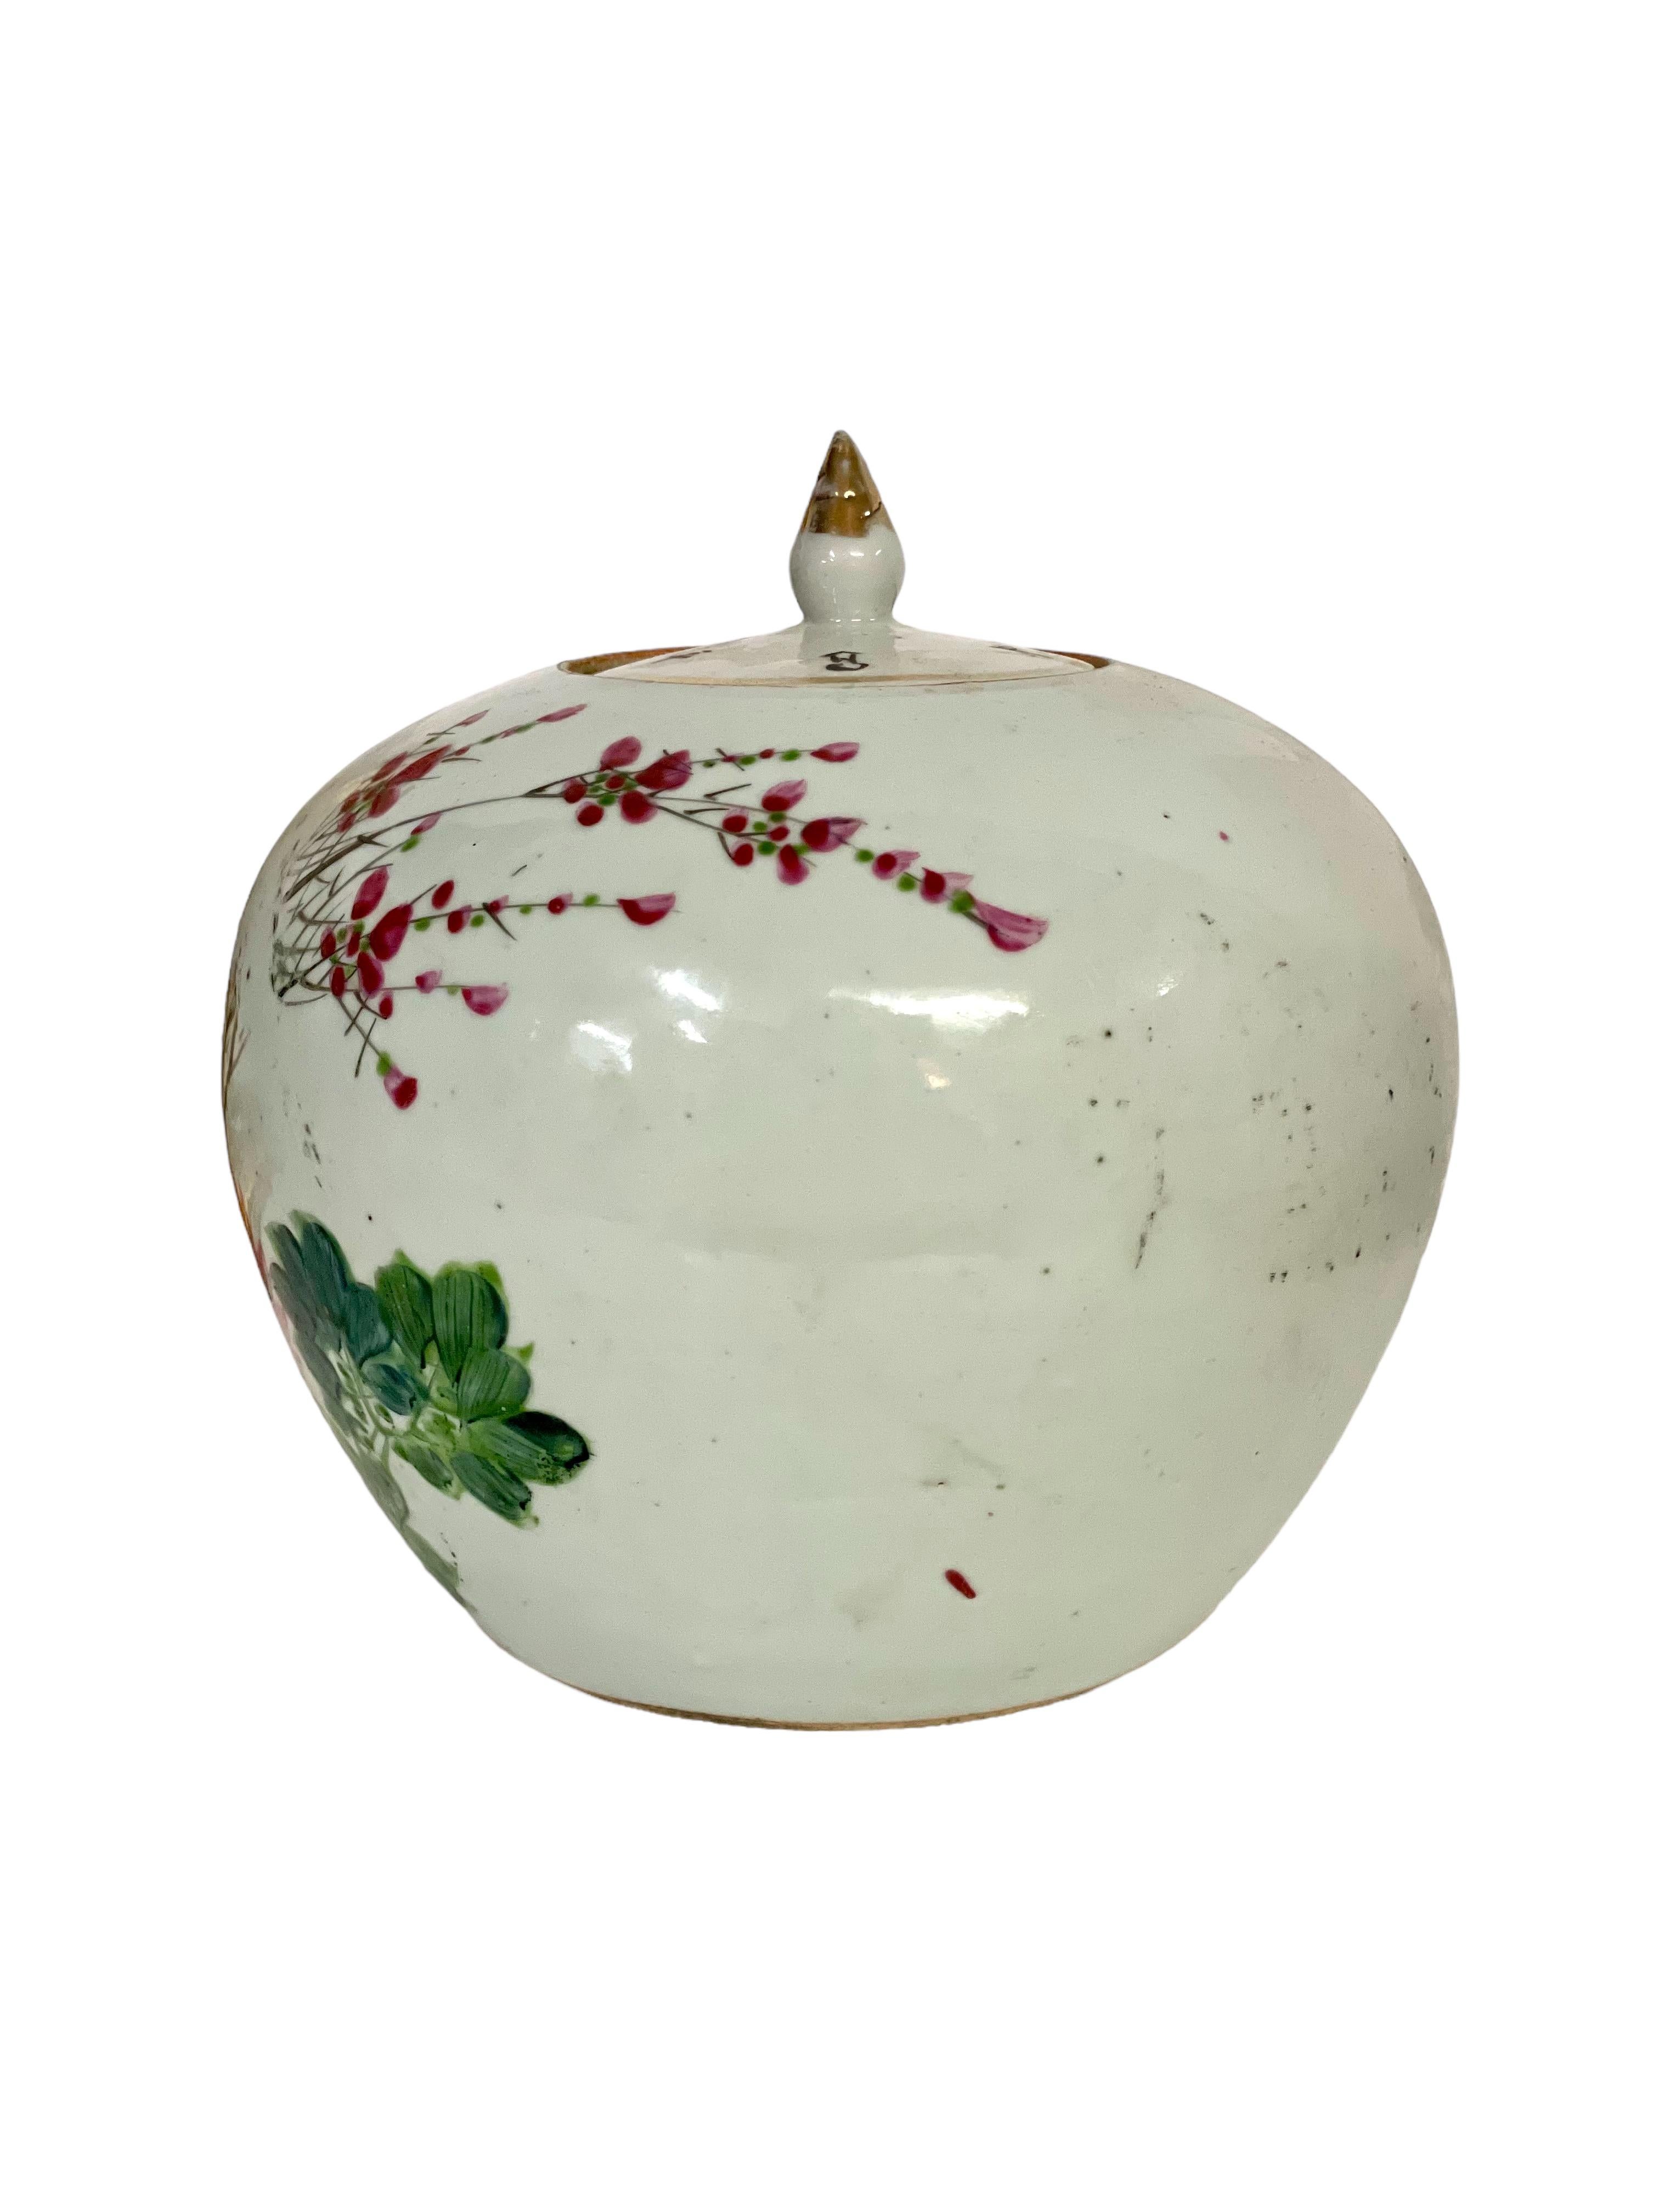 Dieses chinesische Vintage-Porzellan-Ingwerglas mit seinem dicht schließenden Deckel ist wunderschön in der traditionellen 